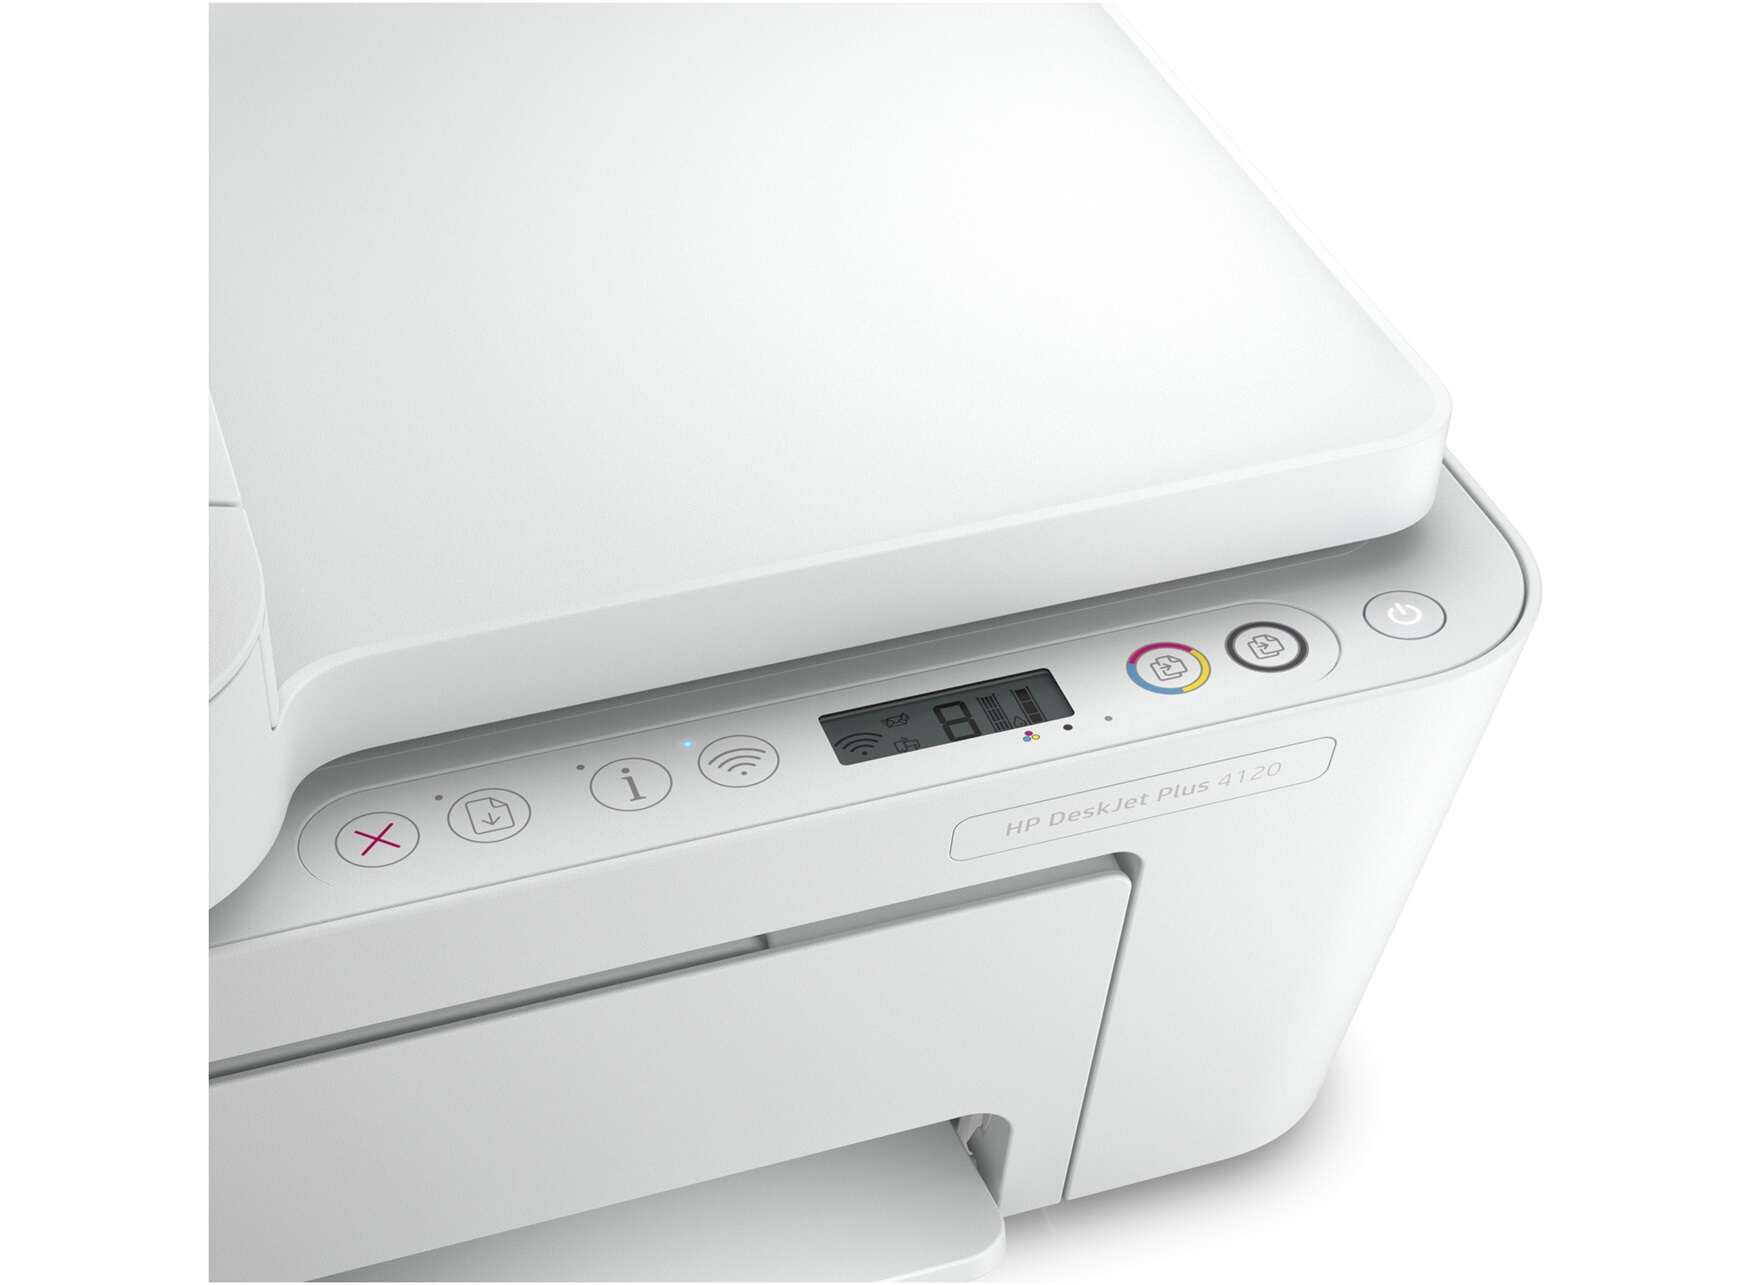 Imprimantes HP DeskJet 2700, Ultra 4800 - Première configuration